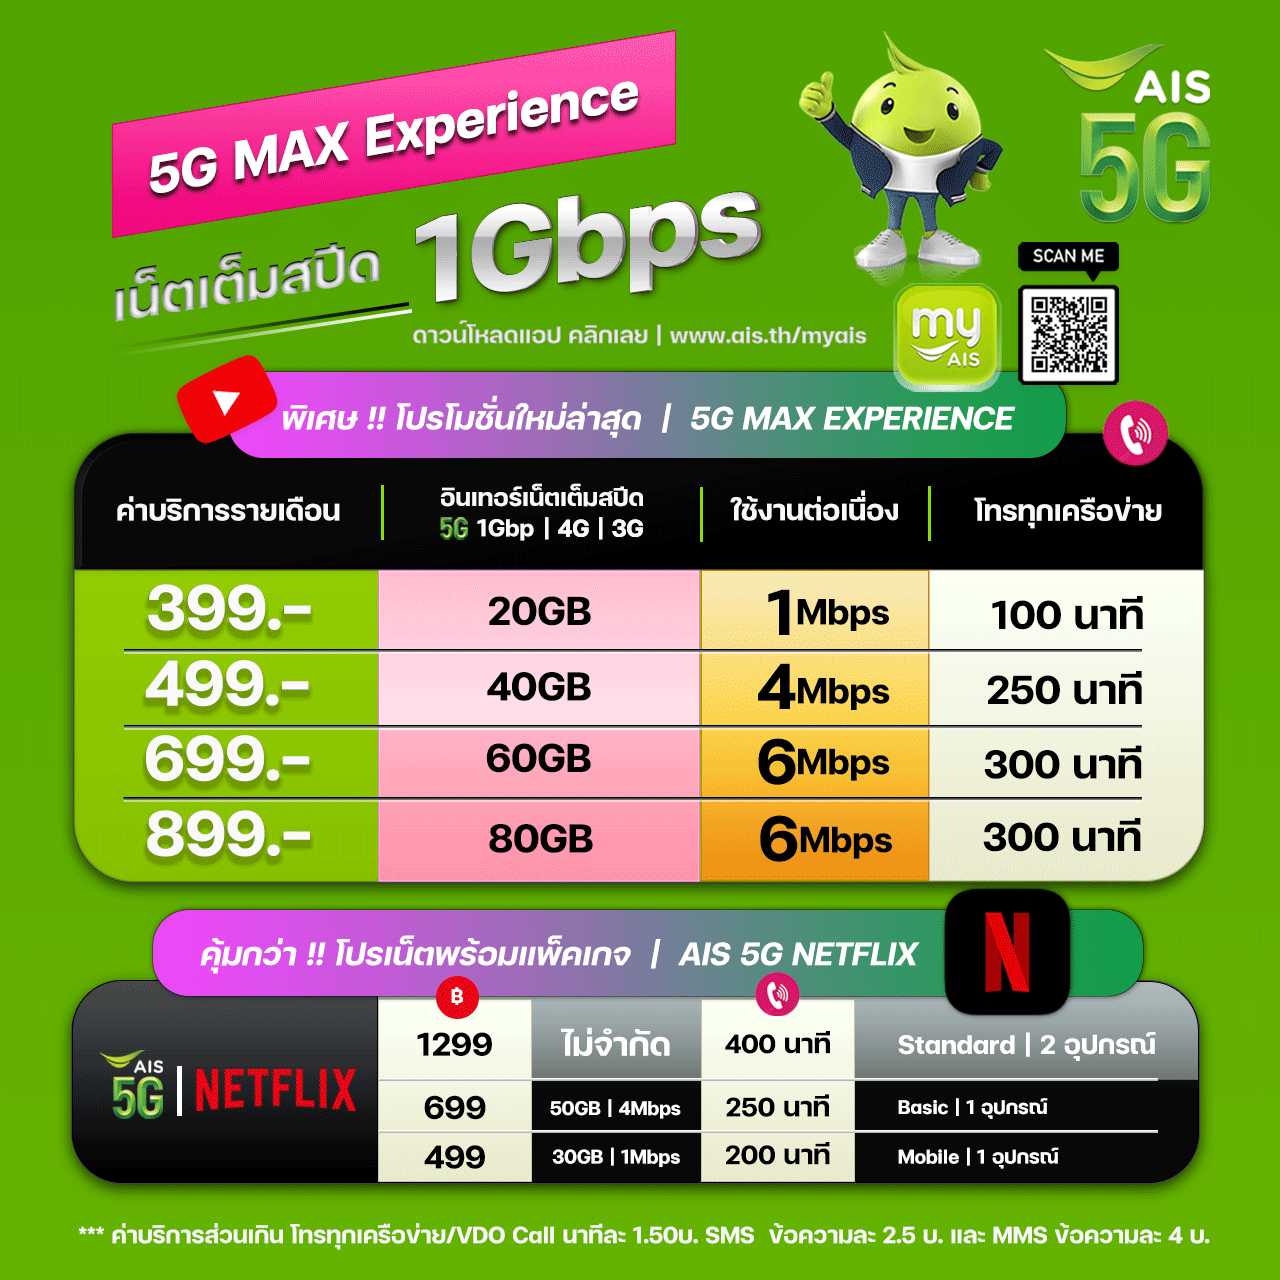 ย้ายค่ายมา AIS Fixxy 20 Mbps